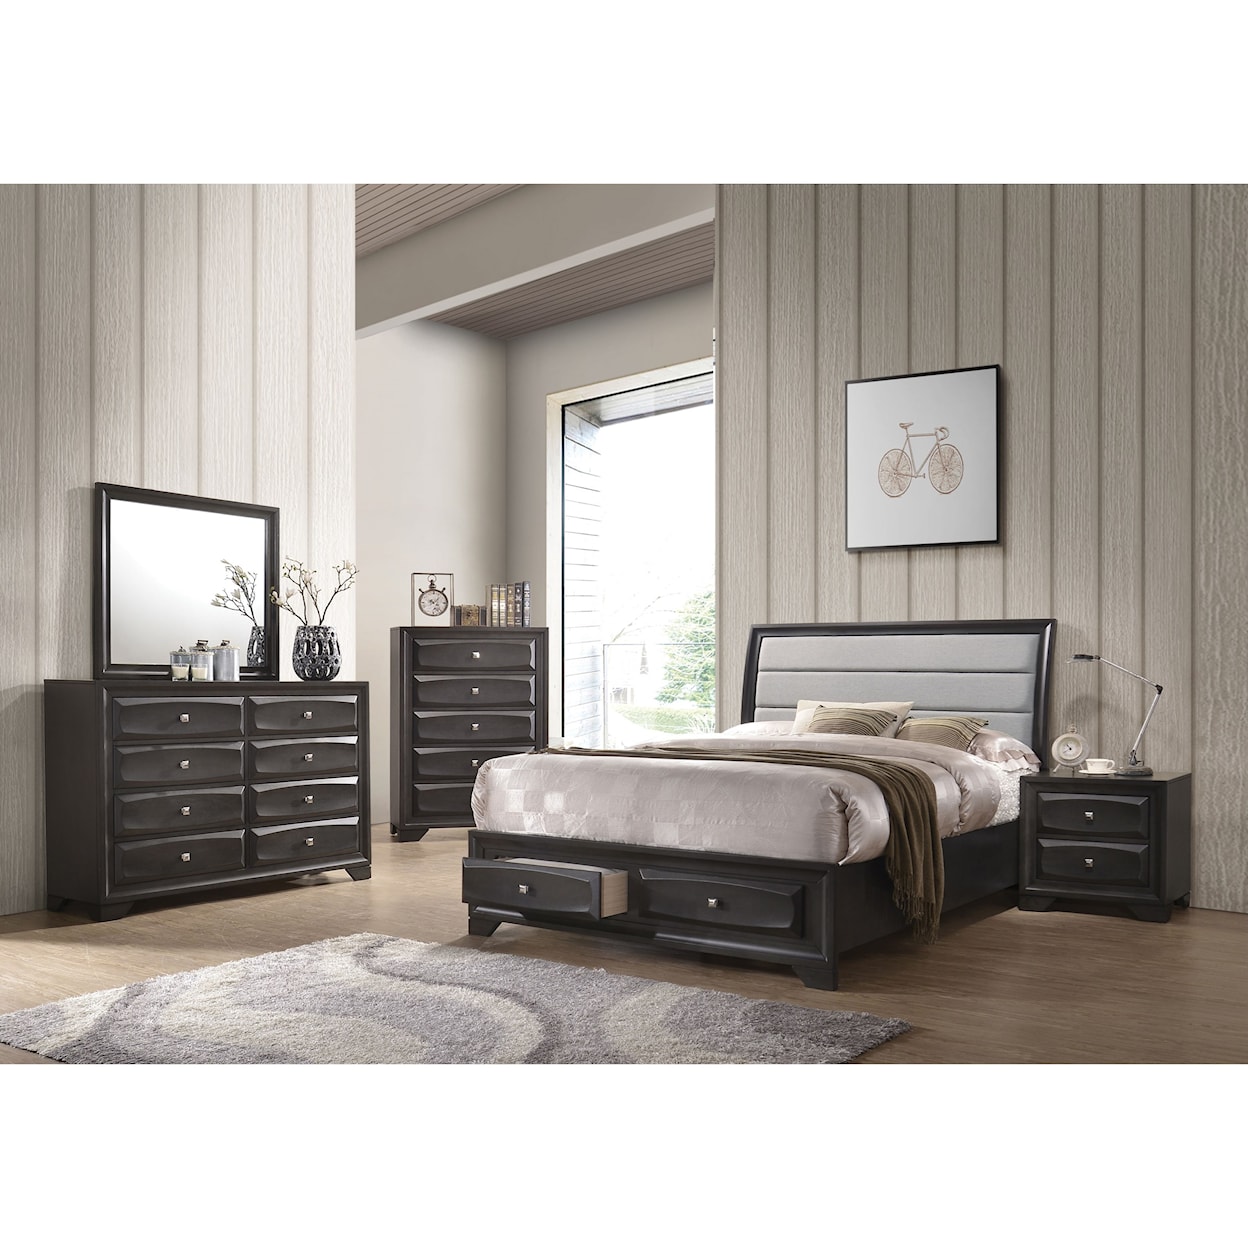 Acme Furniture Soteris 7pc Queen Bedroom Group